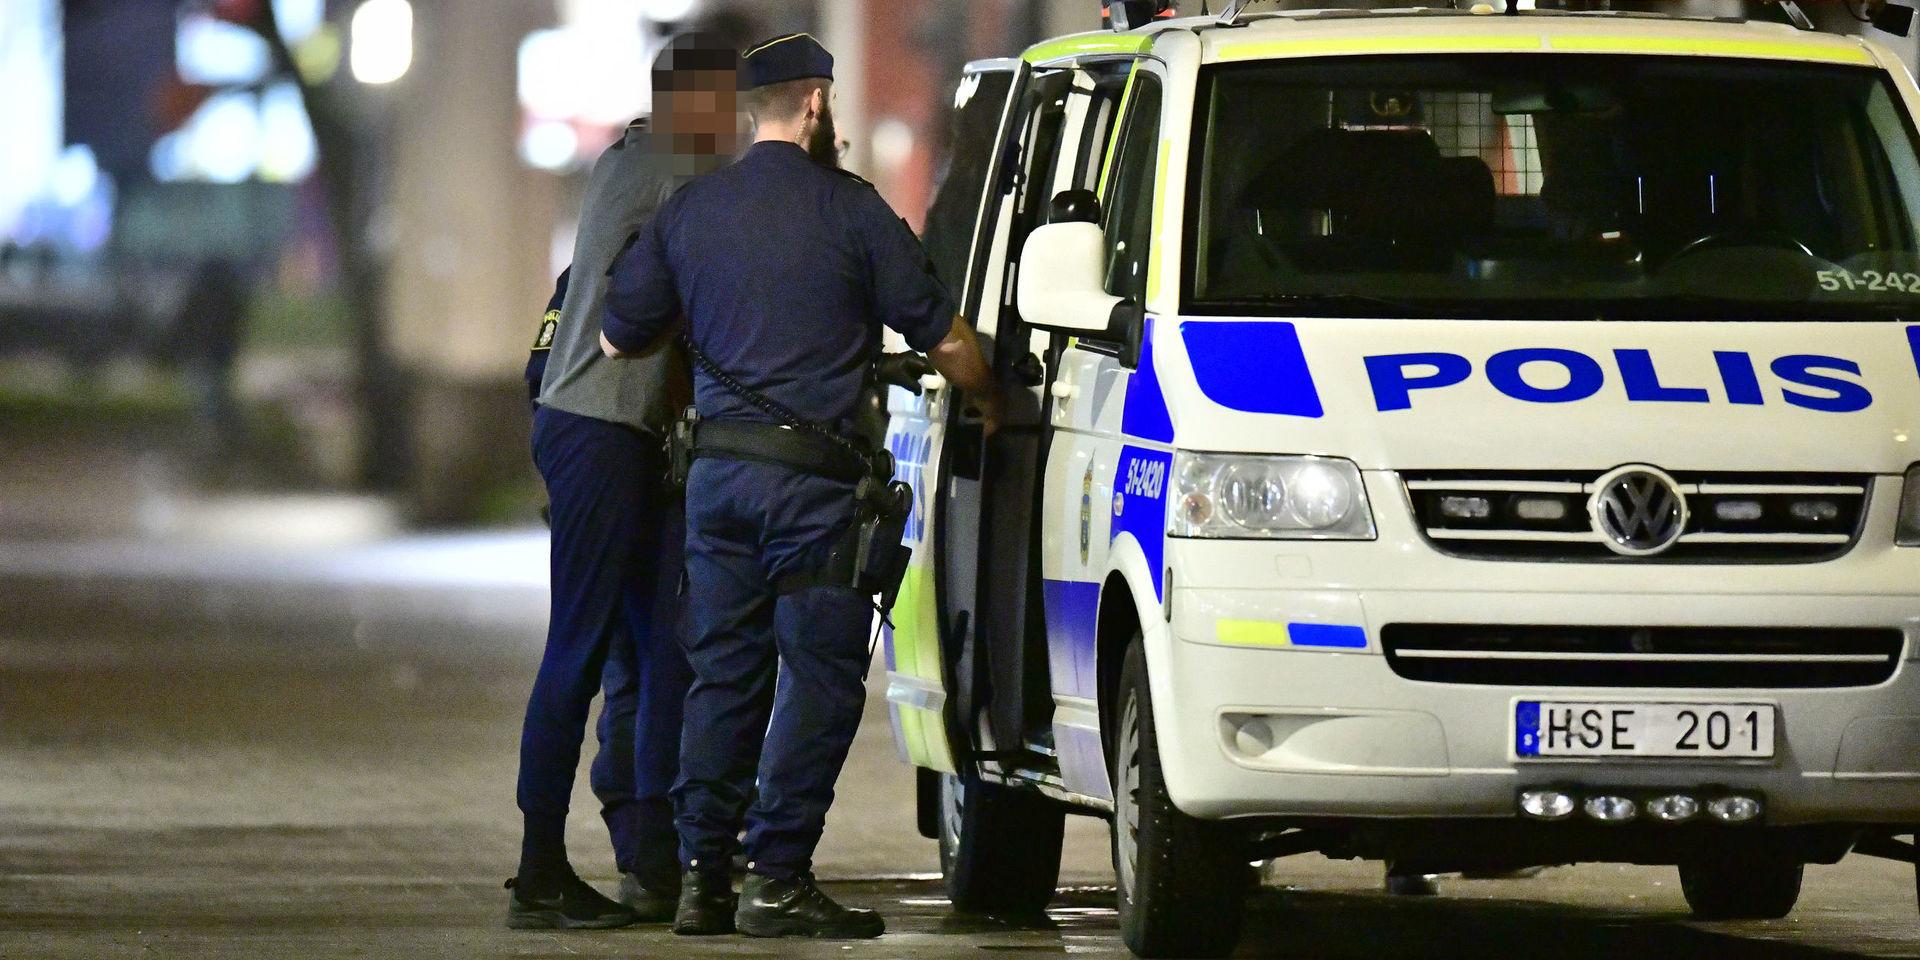 Det var under måndagen som polisen slog till mot flera adresser i Västra Frölunda. 